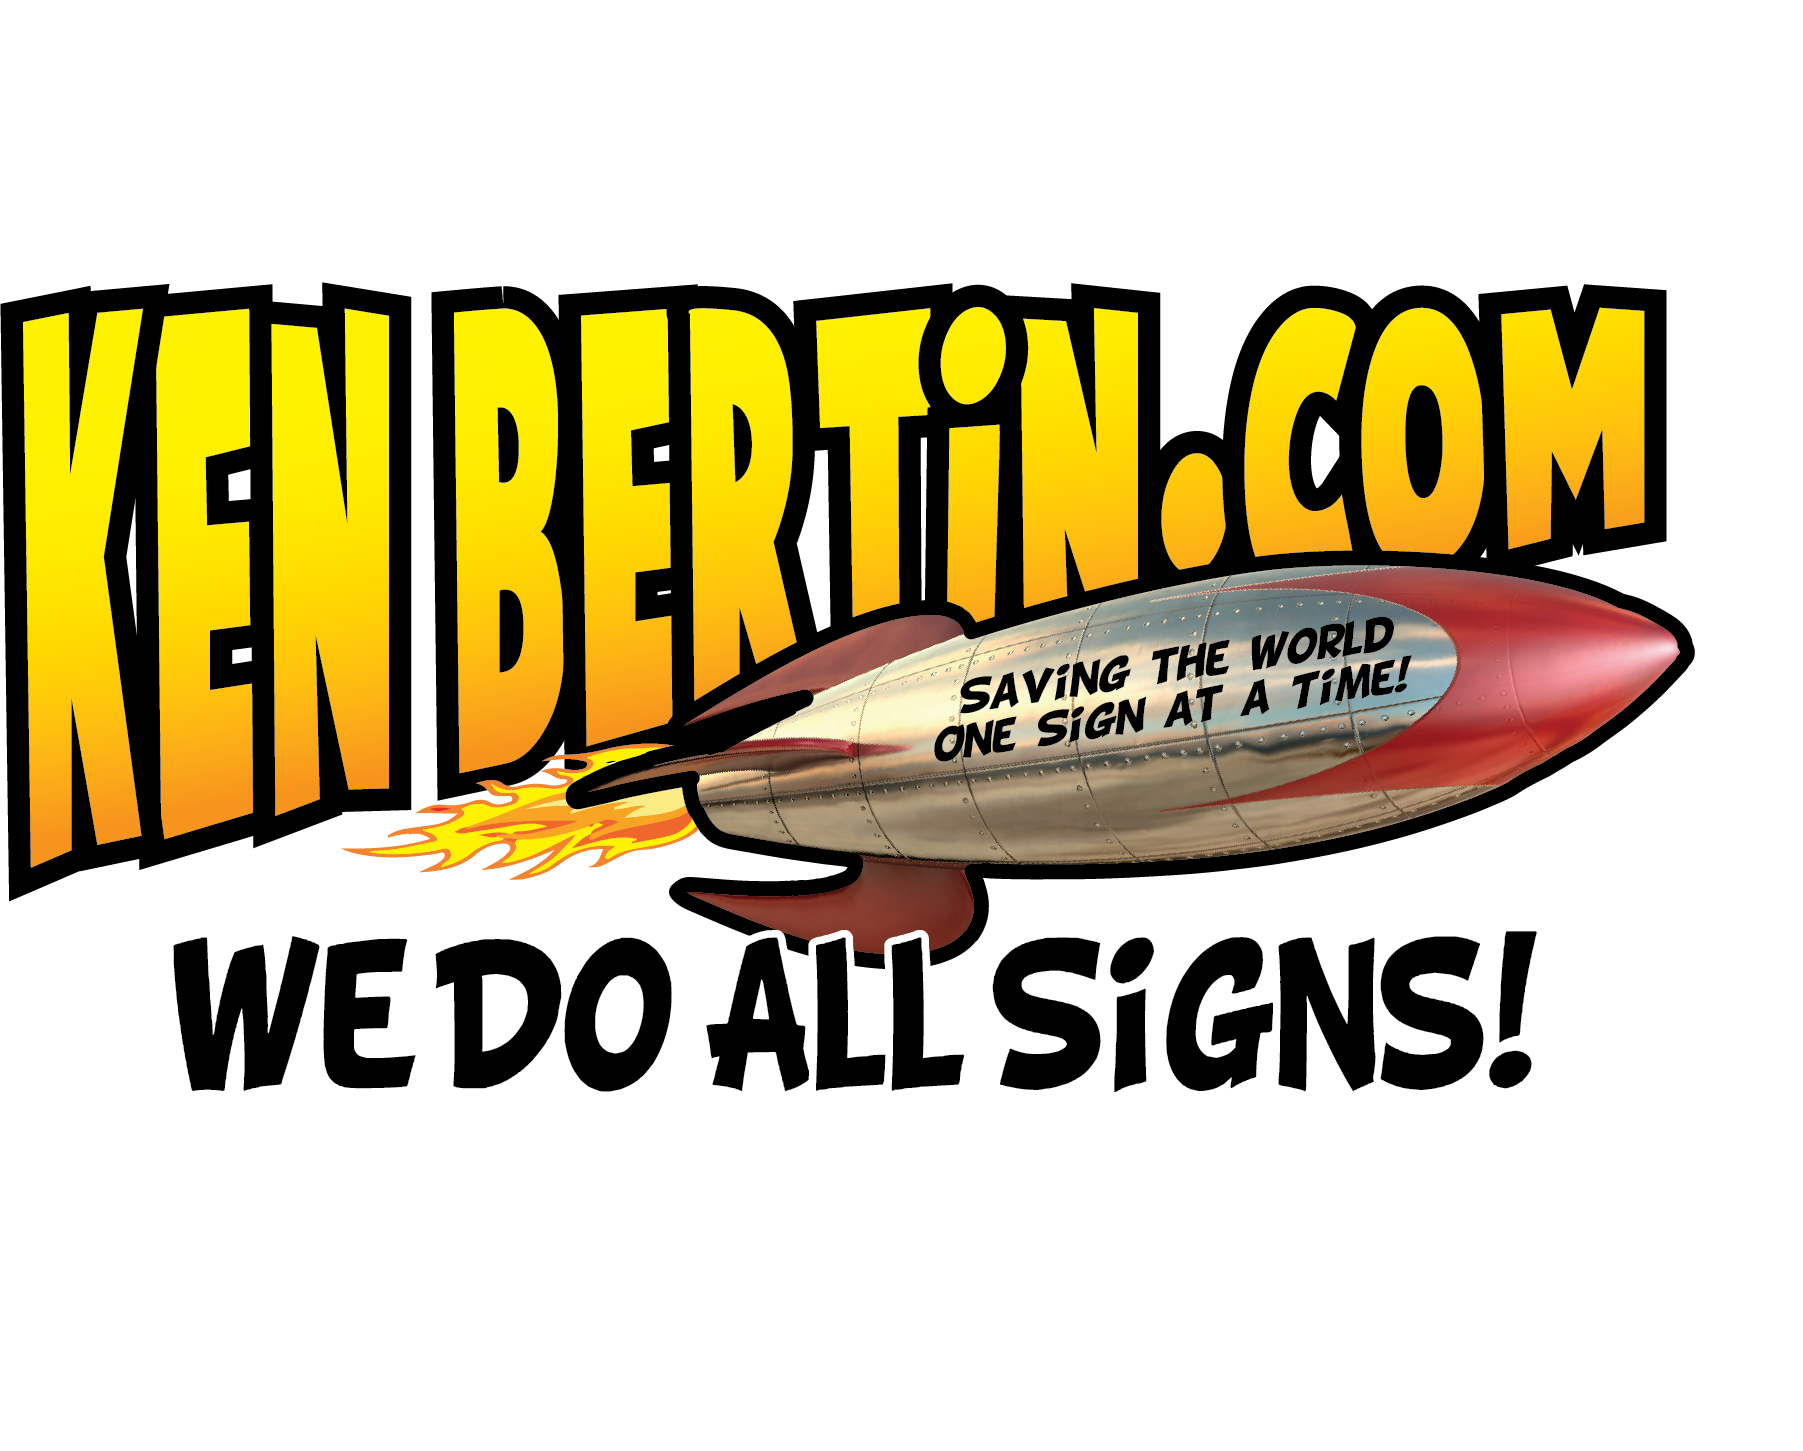 Ken Bertin Signs Logo: We do all signs!